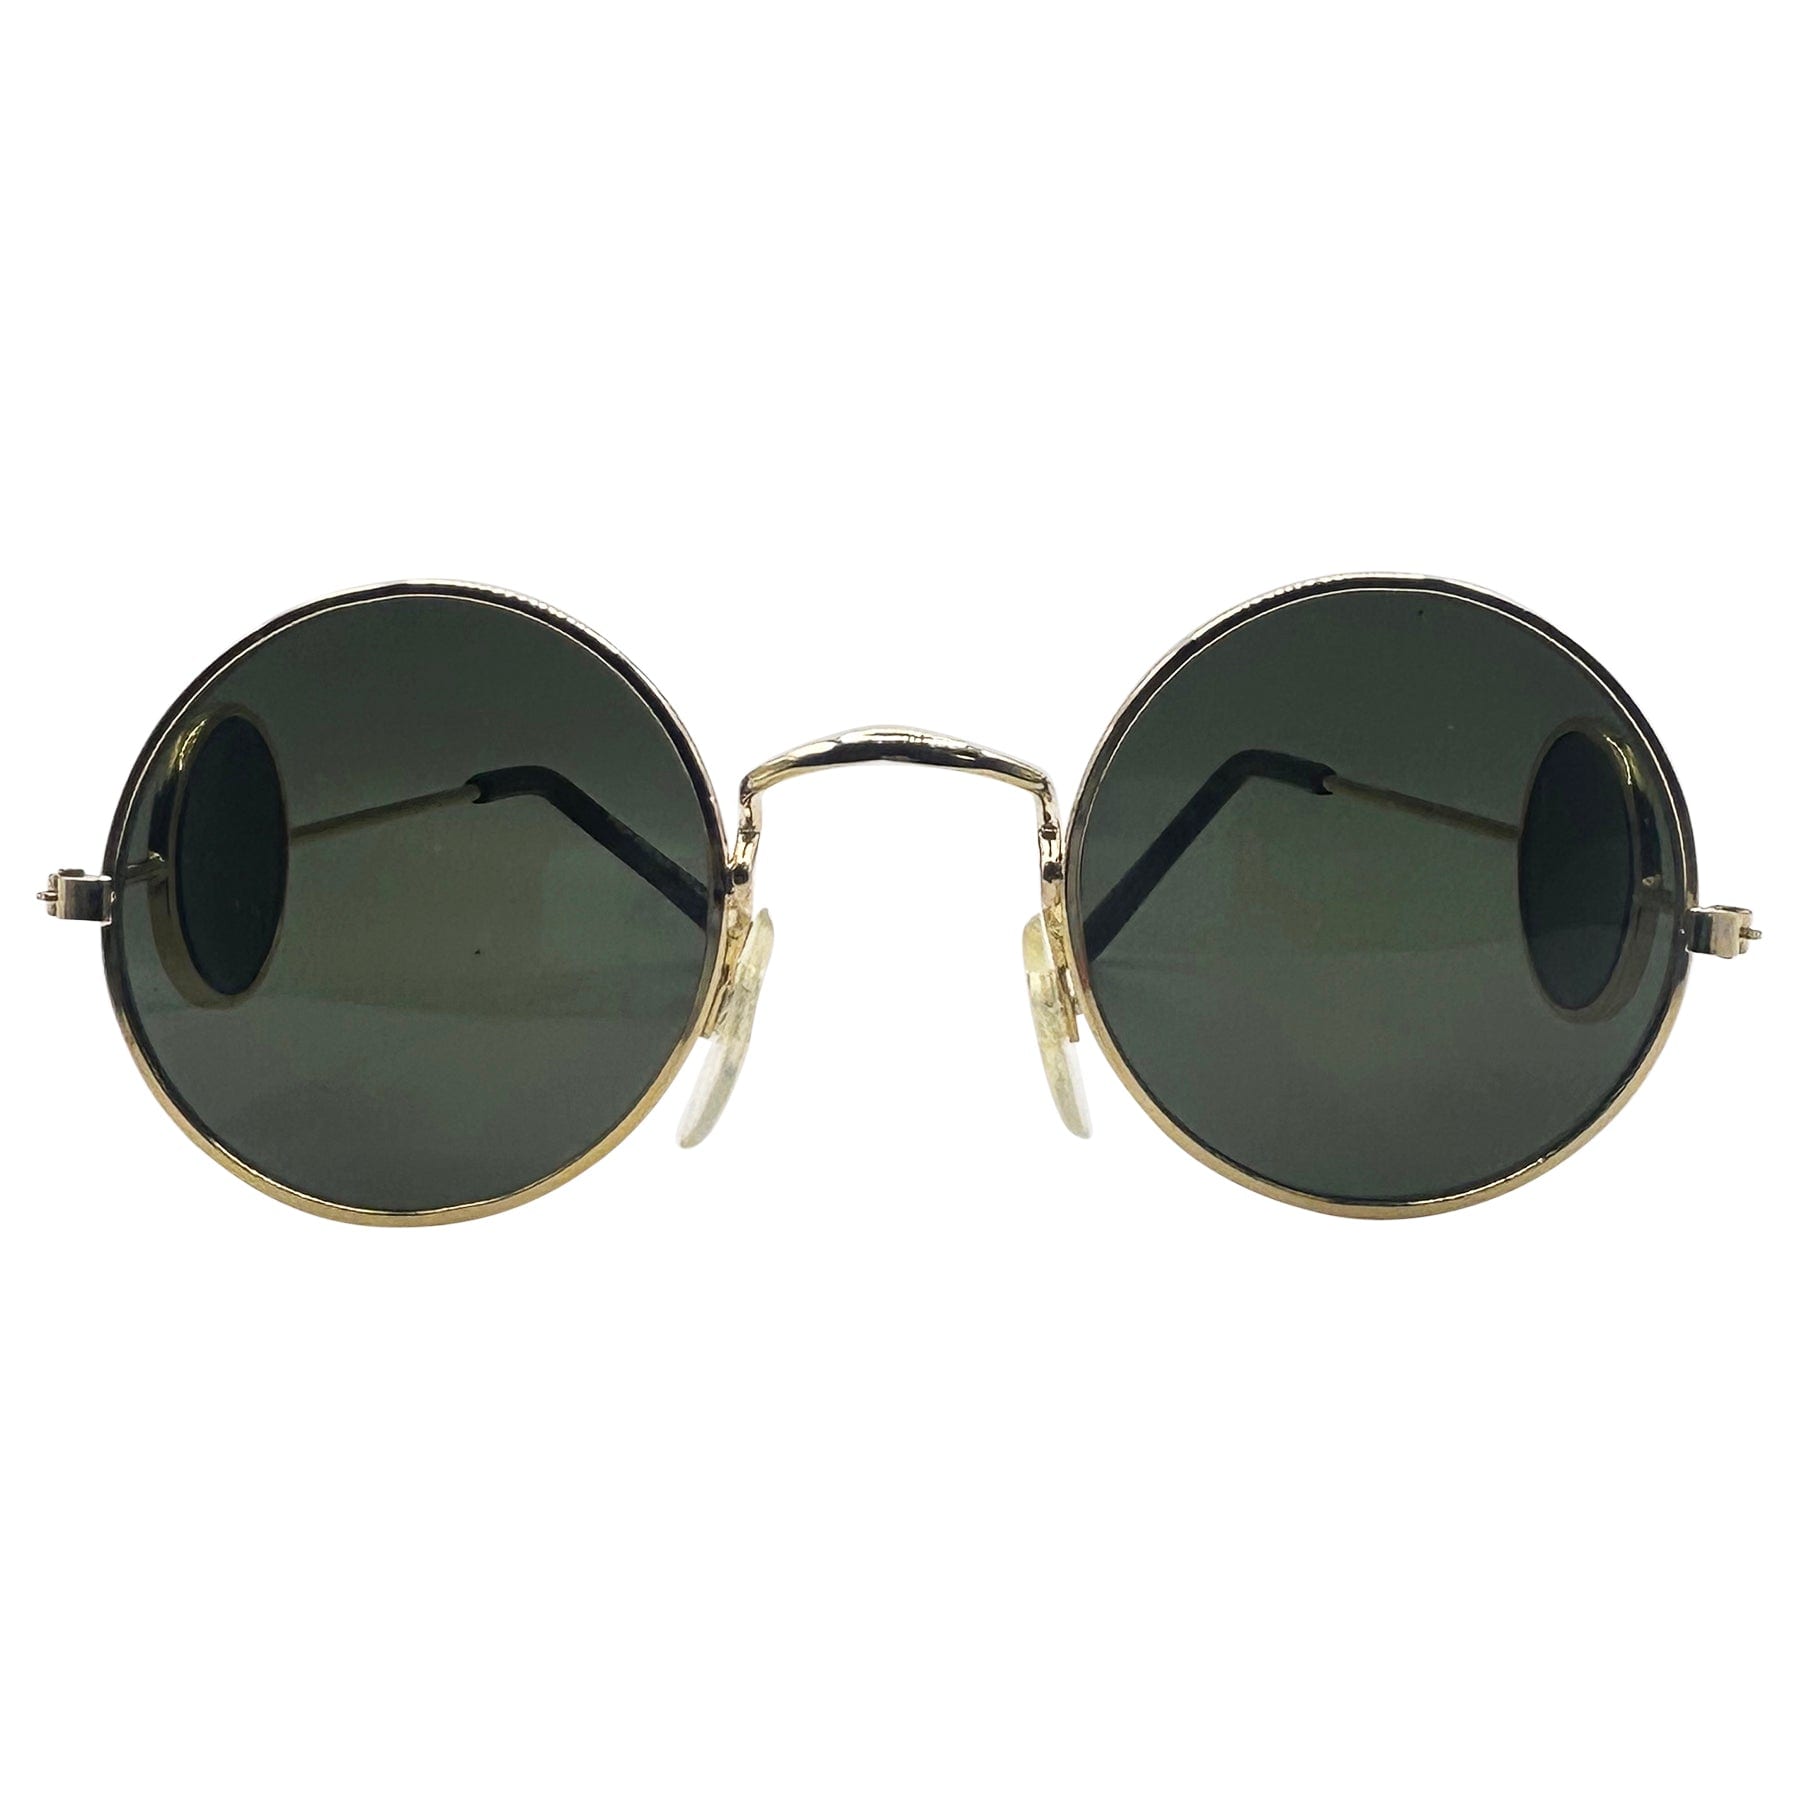 unique sunglasses with temple glass lens arm detailing